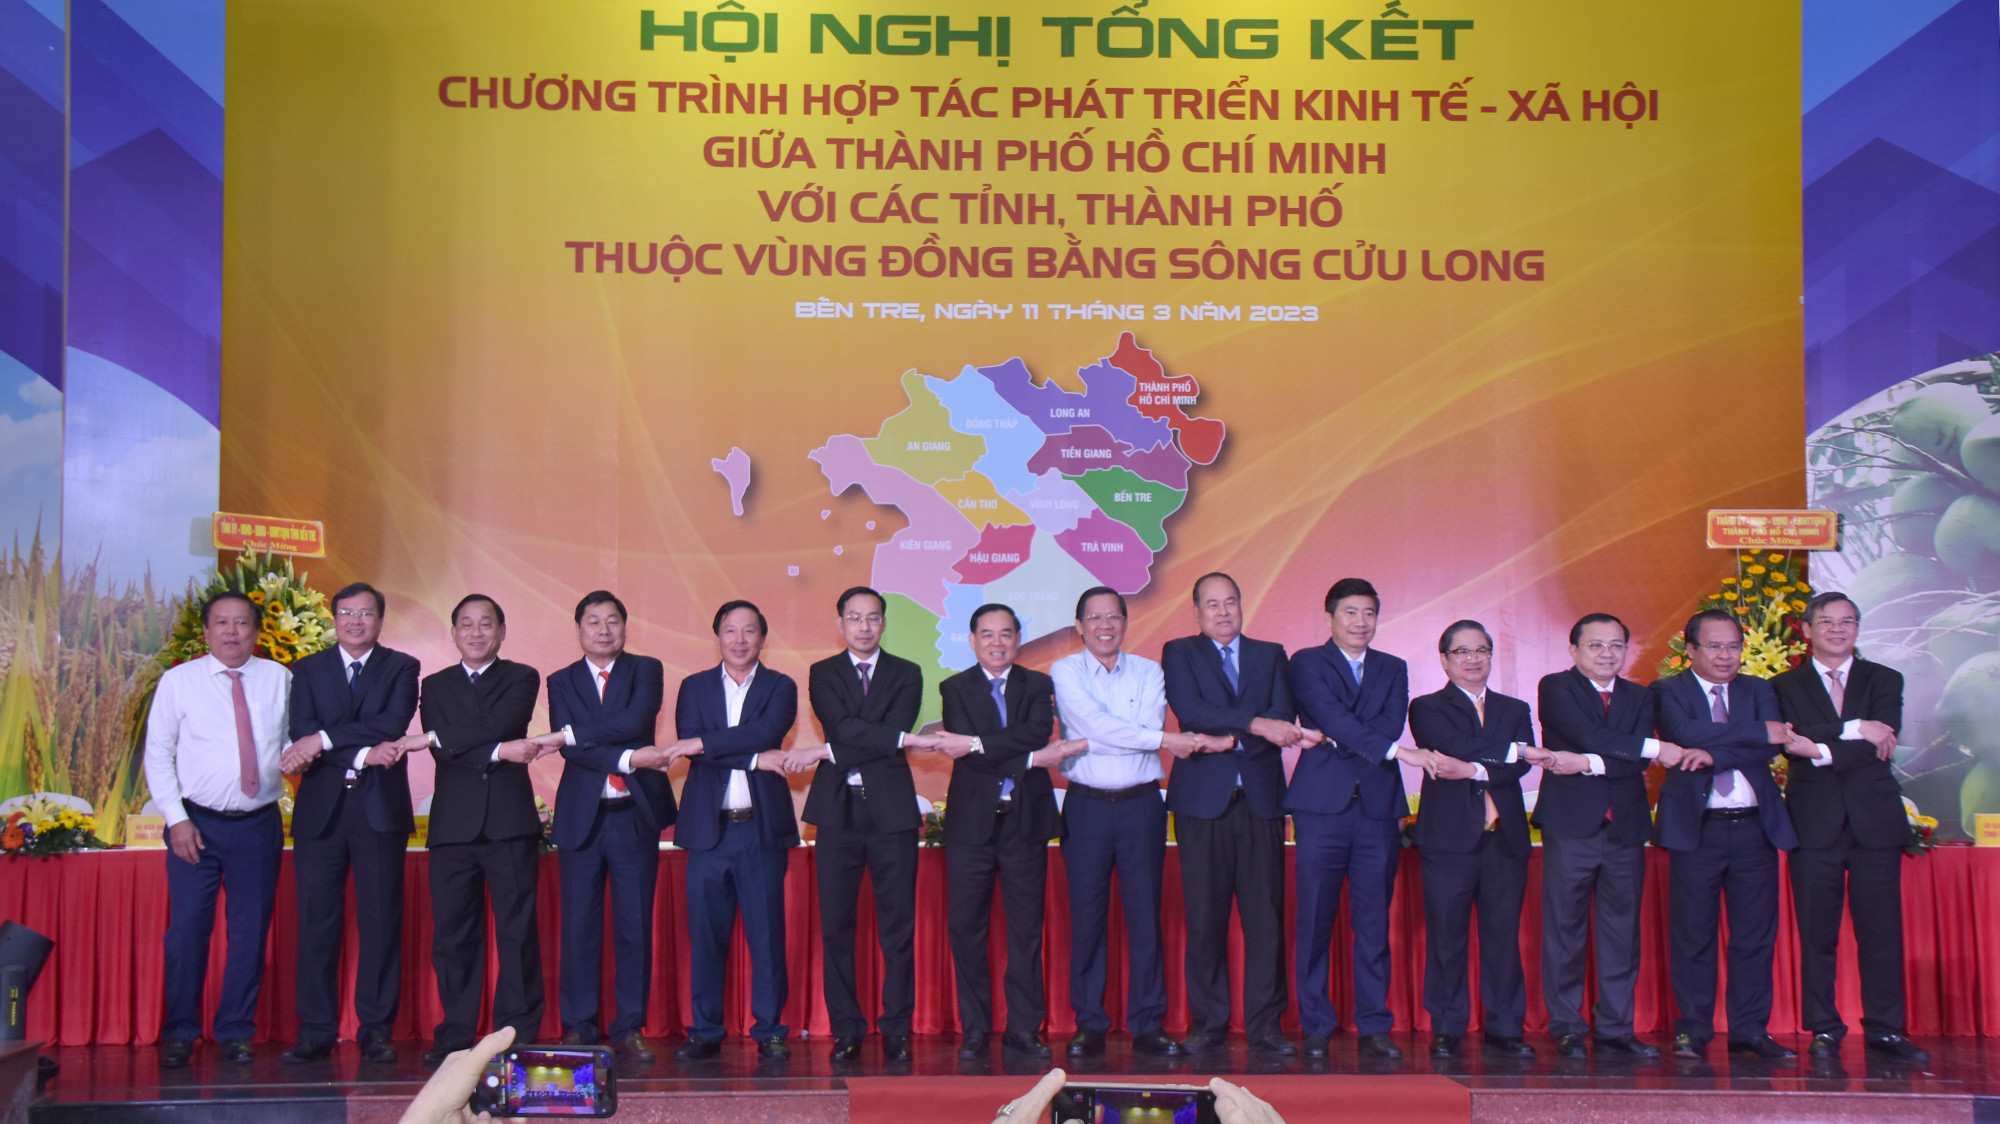 tổng kết chương trình hợp tác kinh tế - xã hội giữa TP. Hồ Chí Minh với các tỉnh, thành vùng ĐBSCL